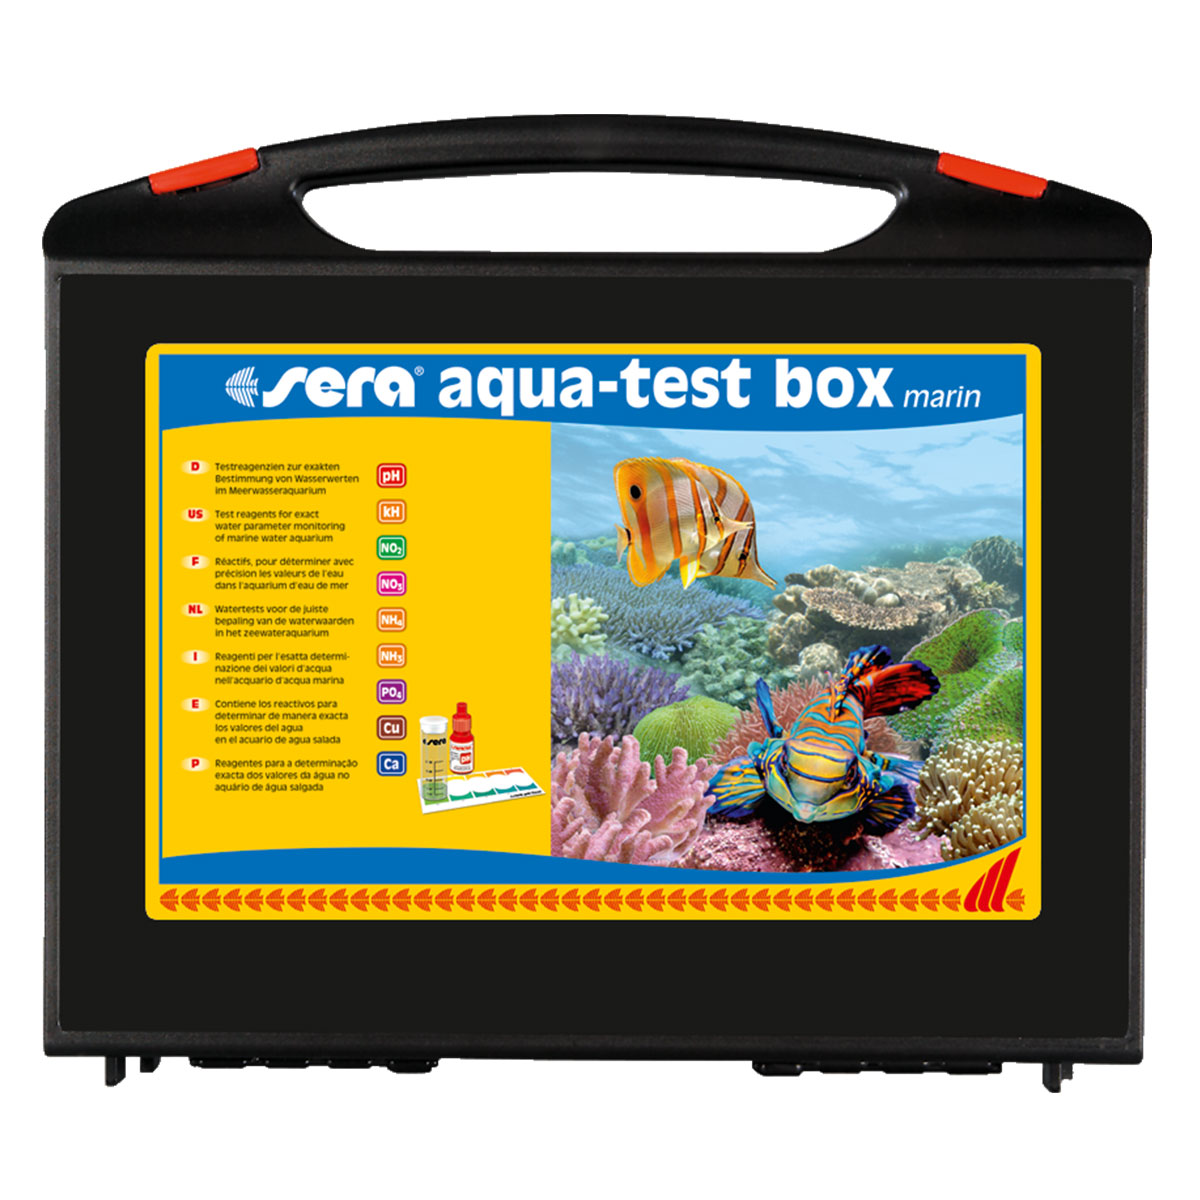 Sera aqua-test box marin (+Ca)